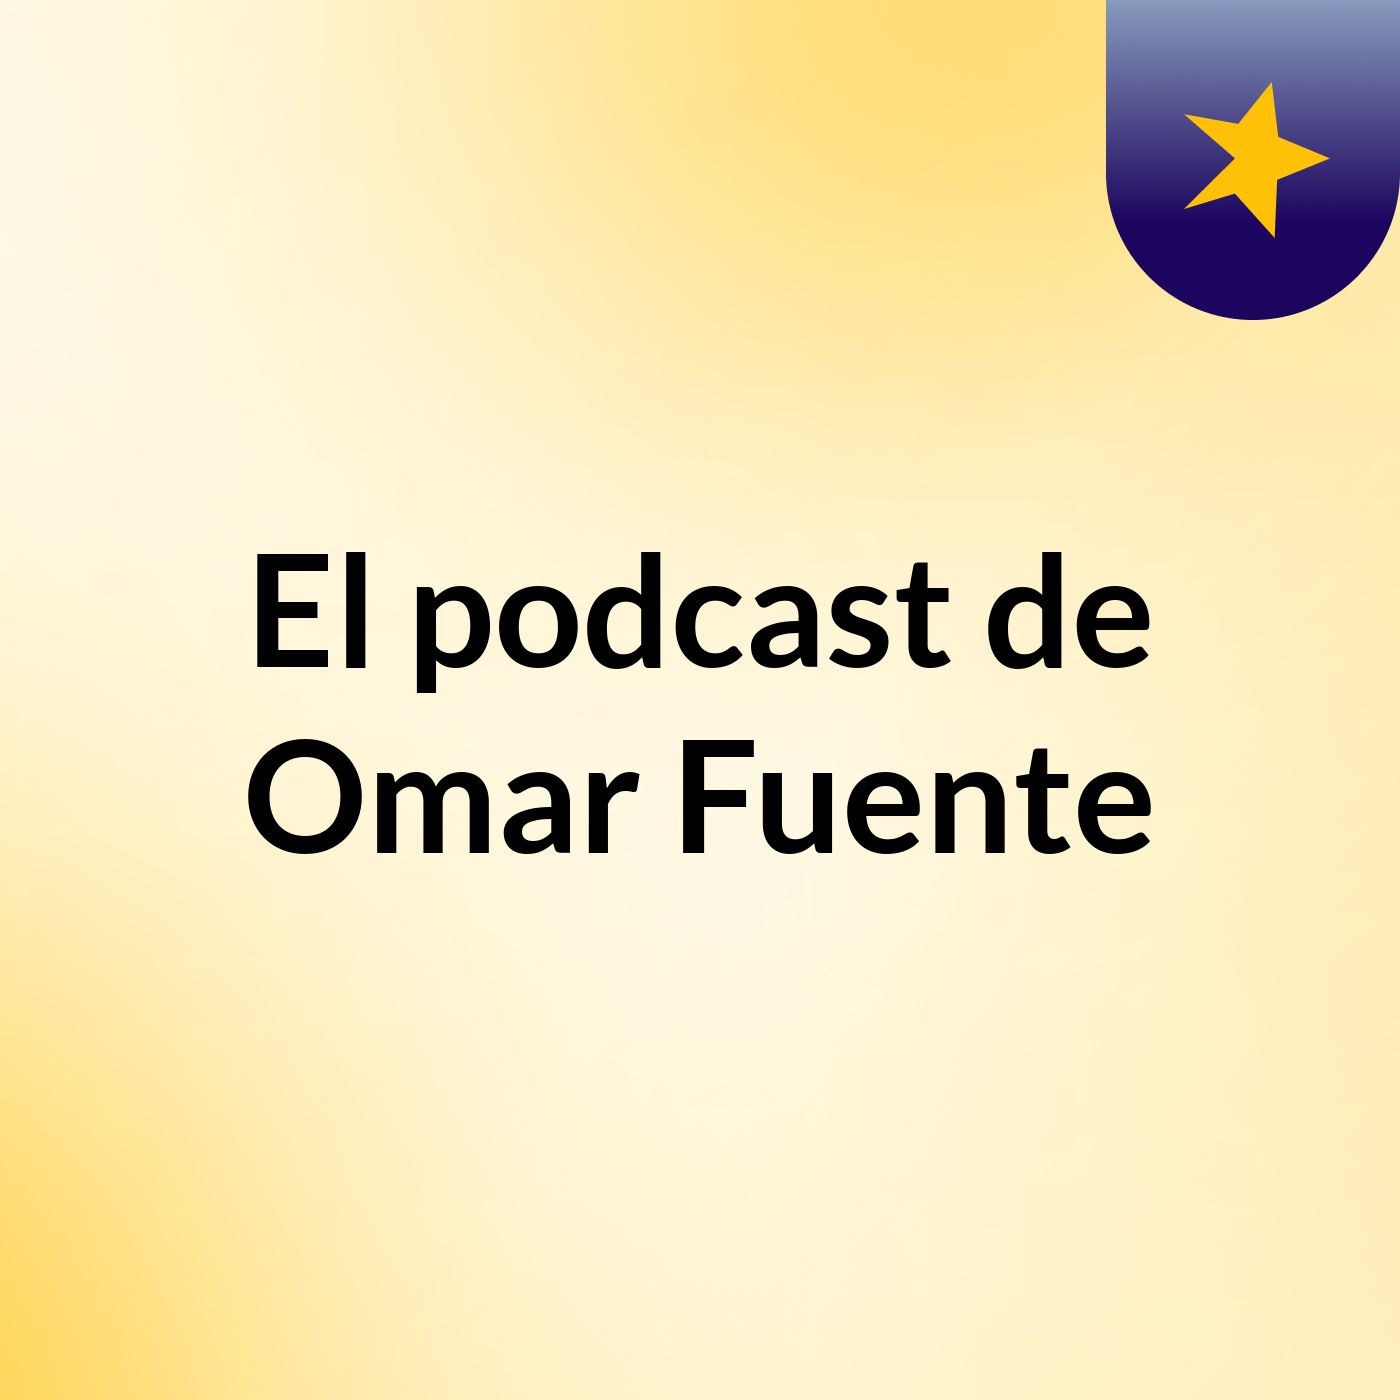 El podcast de Omar Fuente